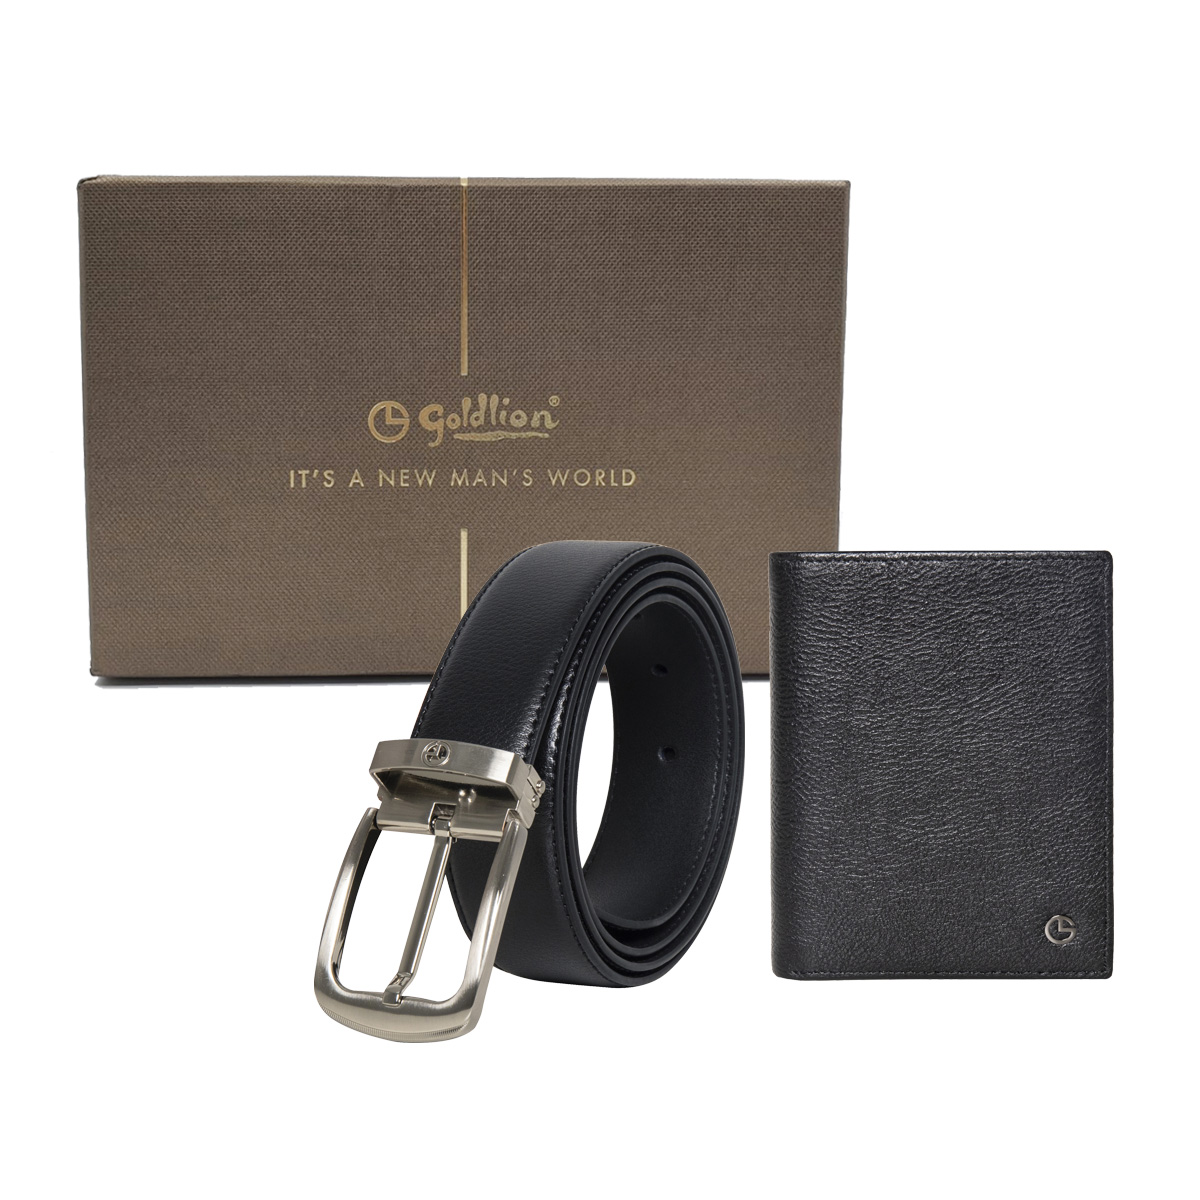 [Online Exclusive] Goldlion Genuine Leather Card Holder & Pin Belt Gift Set